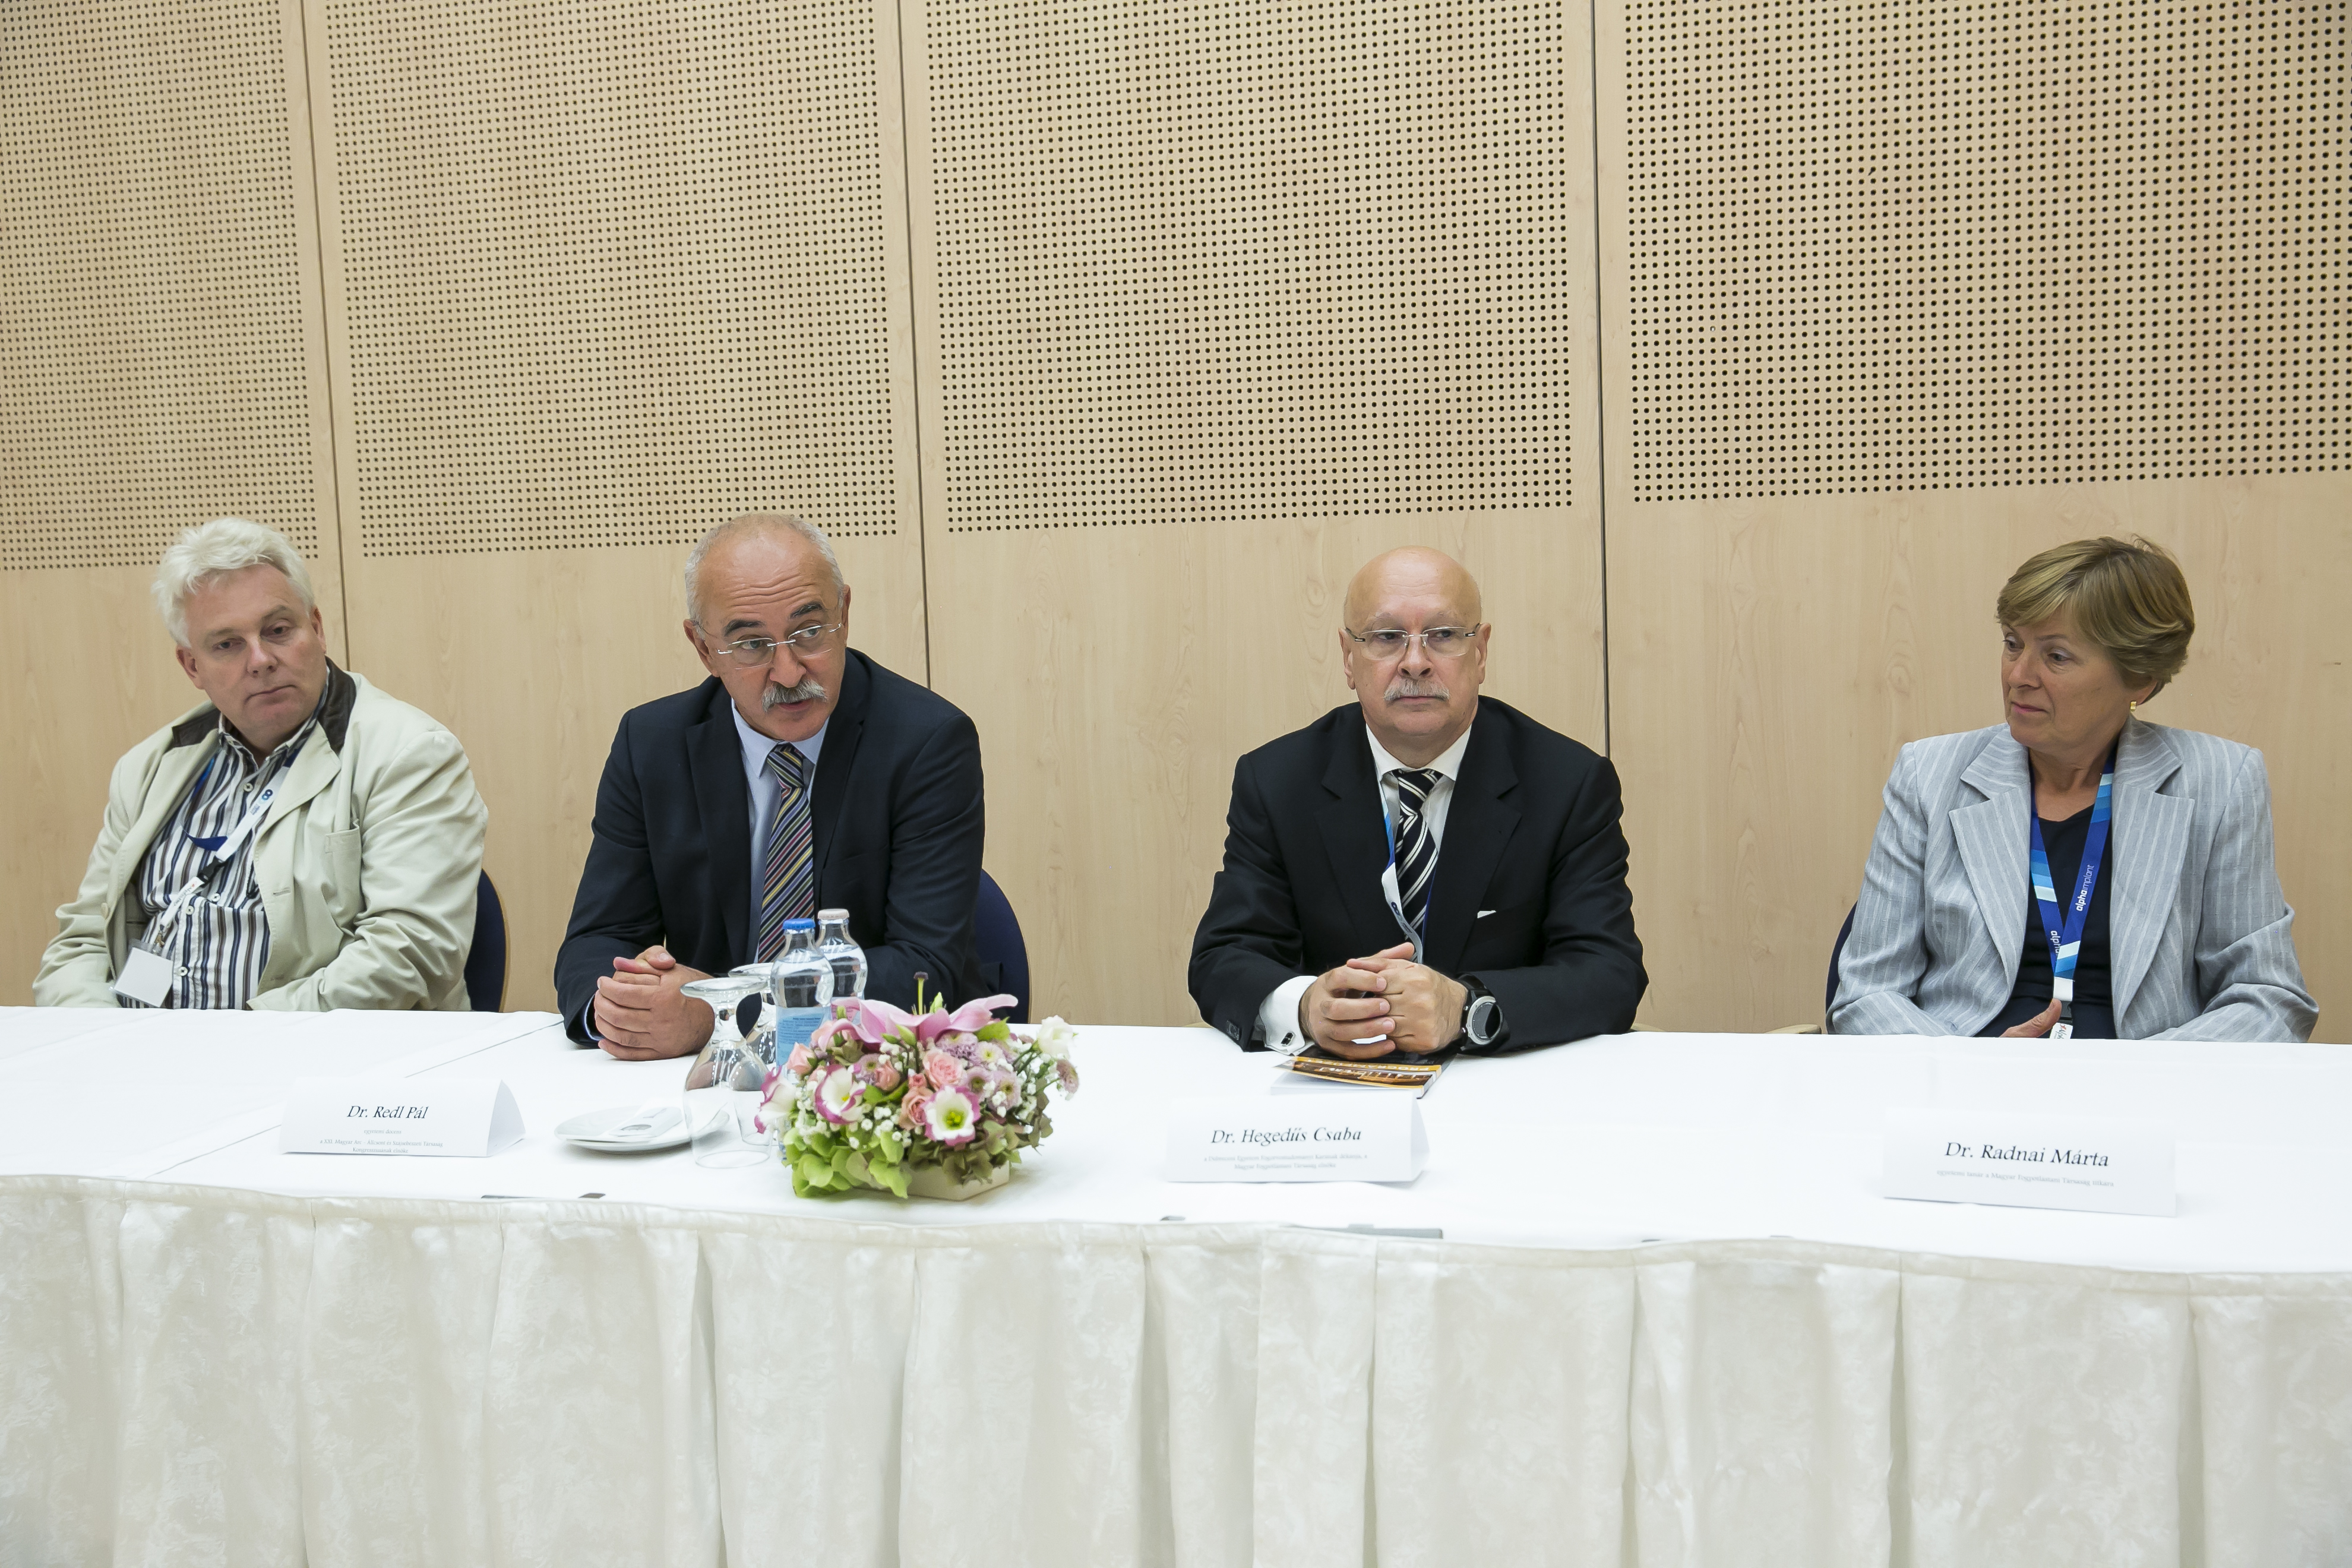 Dr. Németh Zsolt, Dr. Redl Pál, Dr. Hegedûs Csaba és Dr. Radnai Márta 
a rendezvény sajtótájékoztatóján
